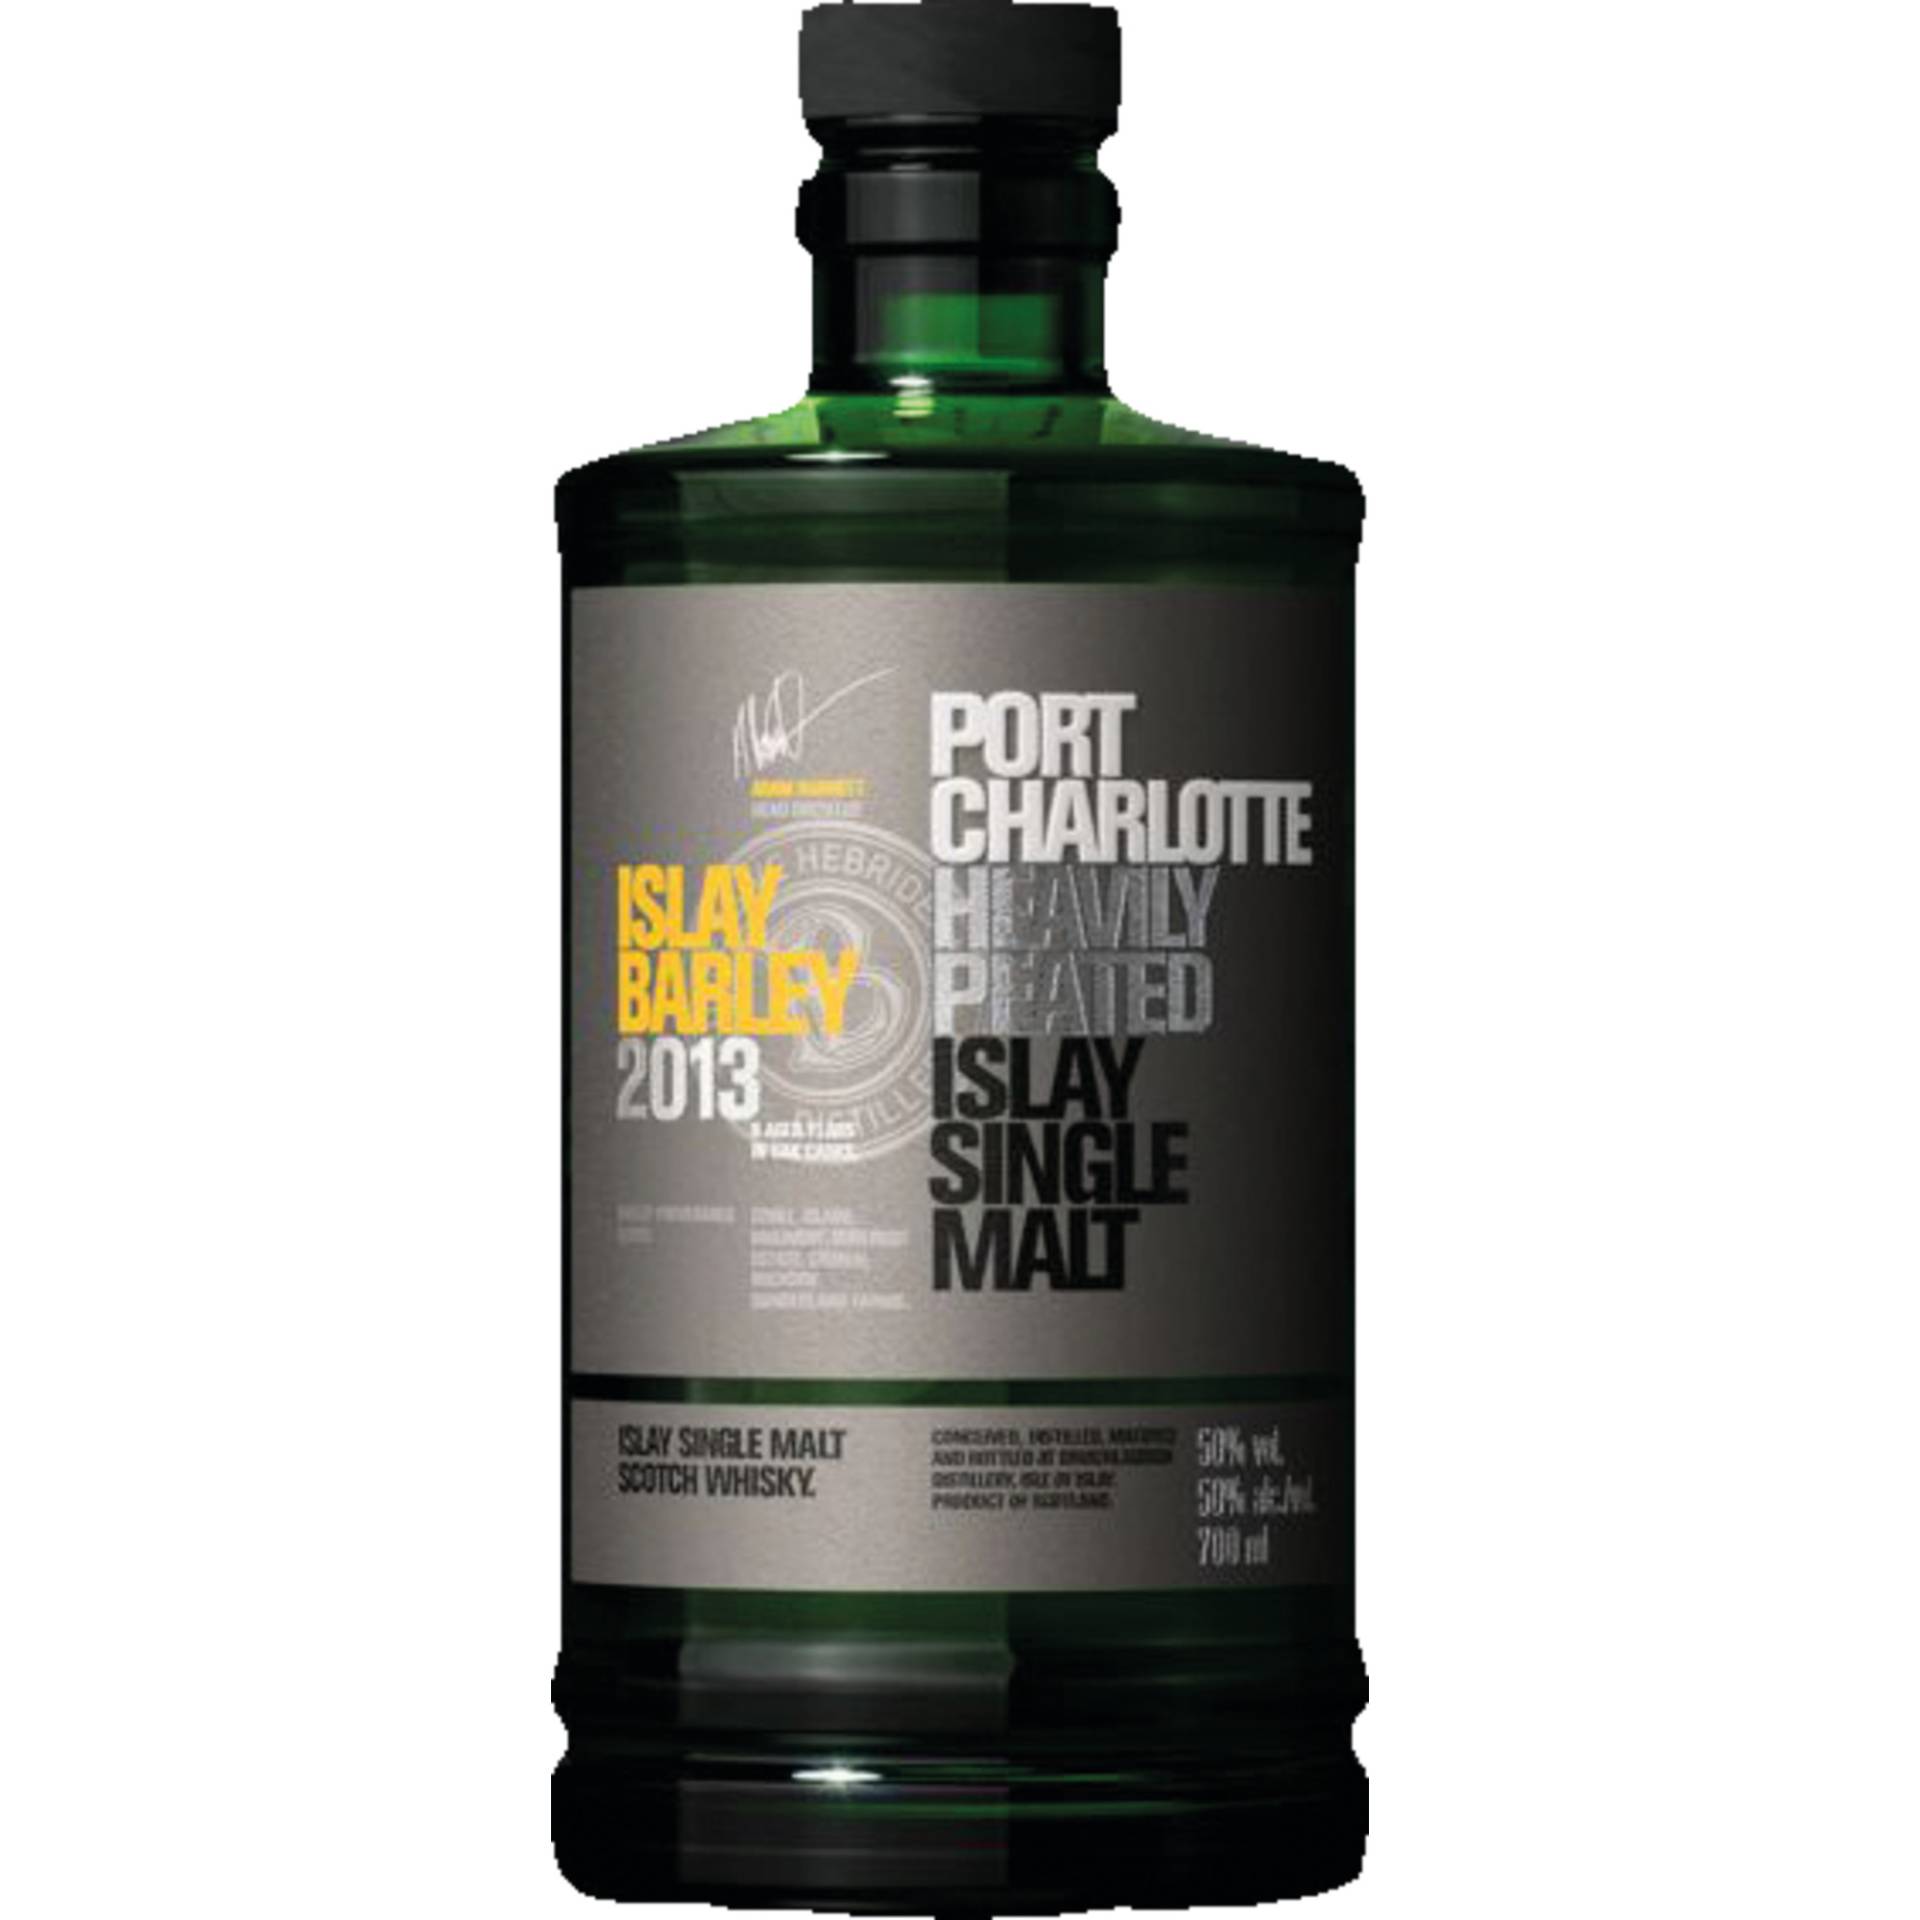 Bruichladdich Port Charlotte 2013 Single Malt, Scotch Whisky 0,7 L, 50,0 Vol., Schottland, Spirituosen von Bruichladdich Distillery , Isle of Islay,  Scotland, Great Britain